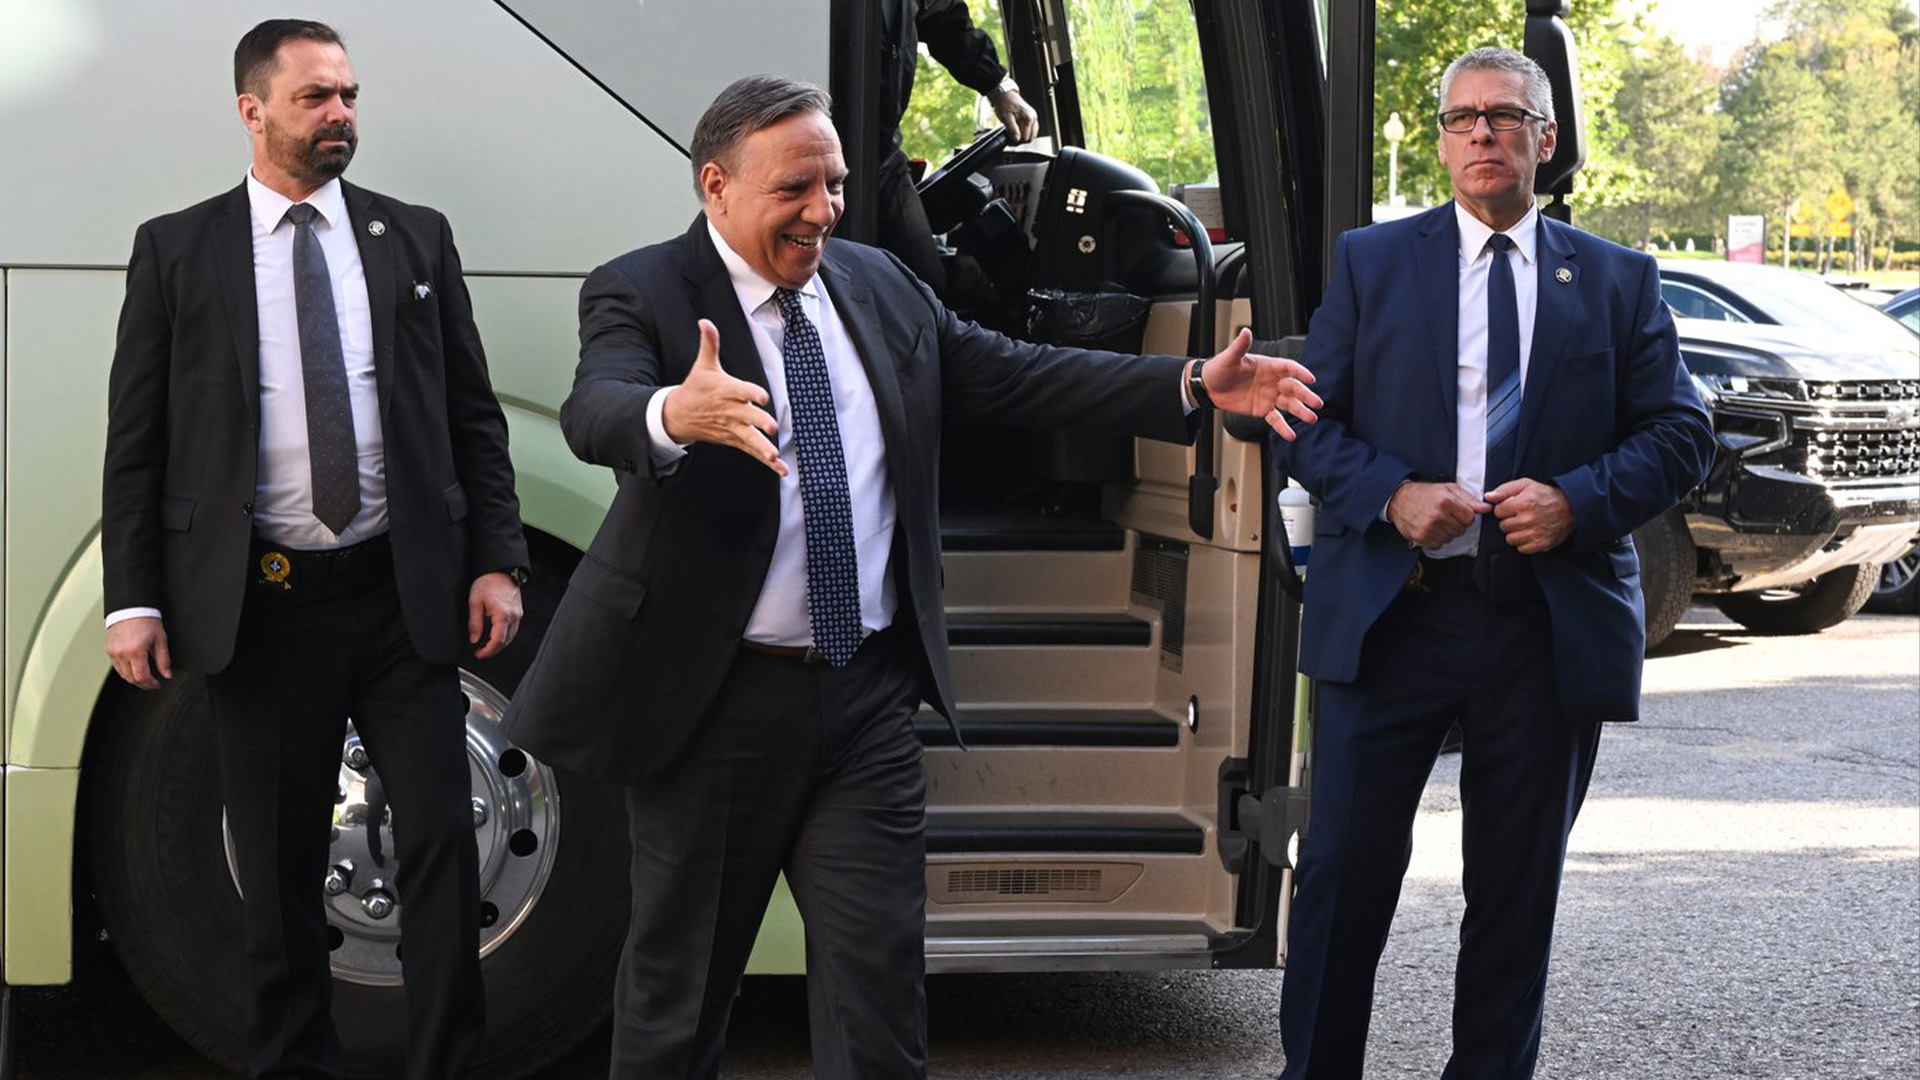 Le chef de la Coalition Avenir Québec, François Legault, est entouré de gardes du corps alors qu'il fait un geste vers un candidat, près de son autobus de campagne, le mardi 6 septembre 2022 à Bécancour, au Québec.